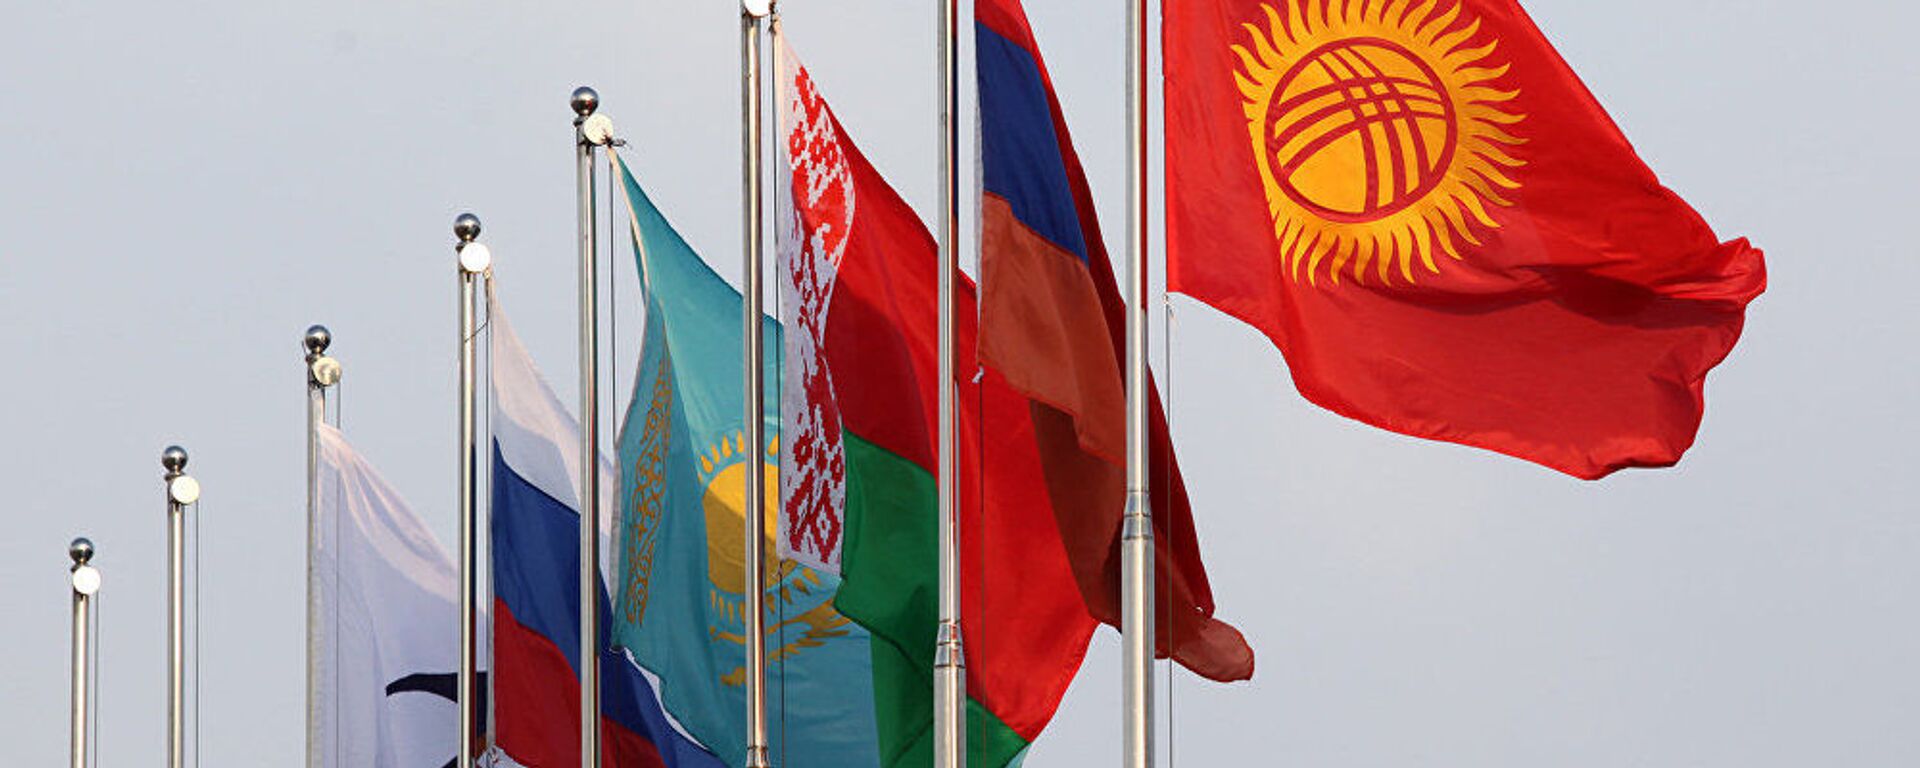 Флаги стран ЕАЭС. Архивное фото - Sputnik Узбекистан, 1920, 17.12.2020